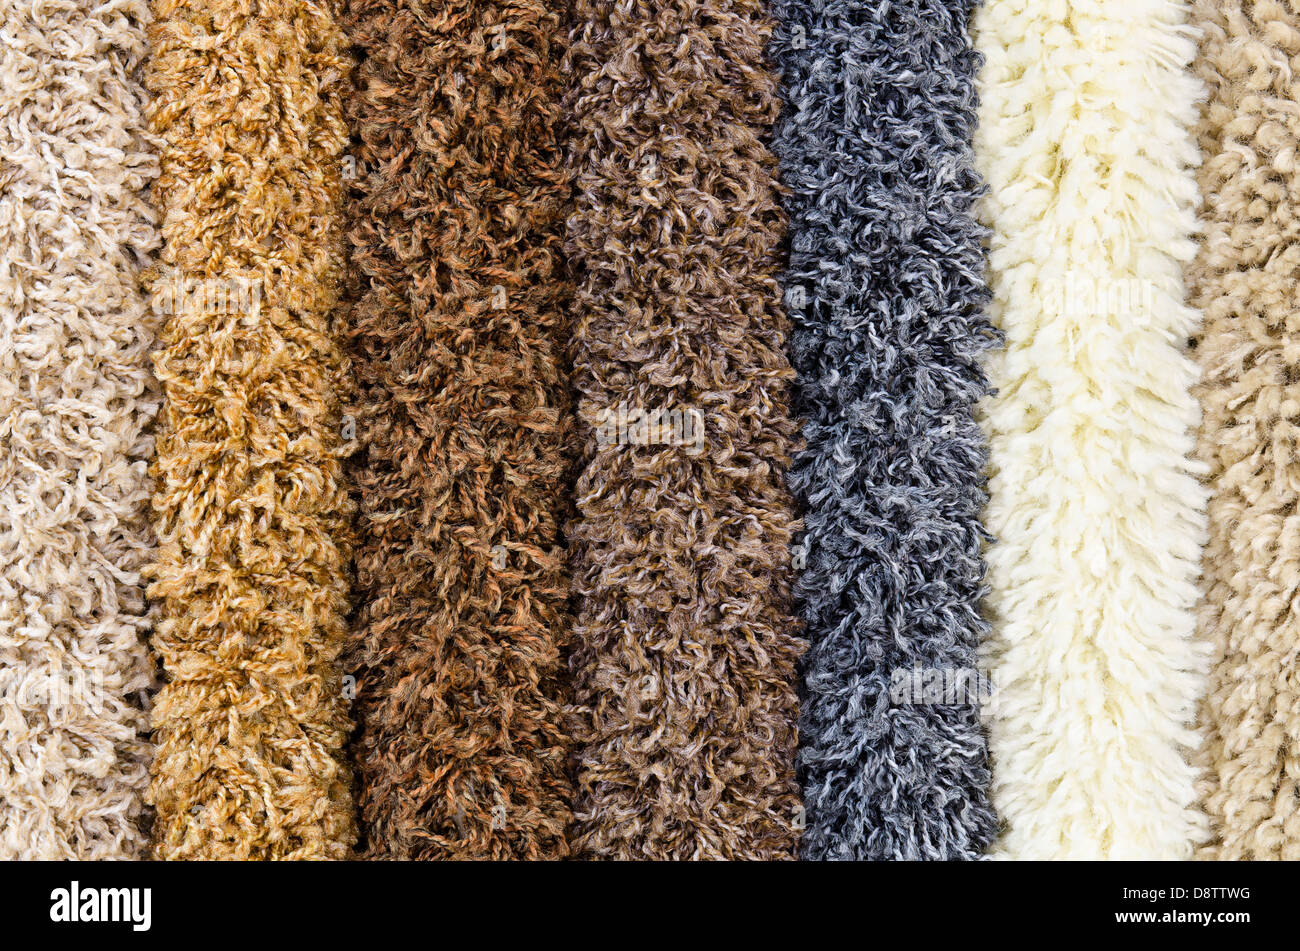 carpet demo samples Stock Photo